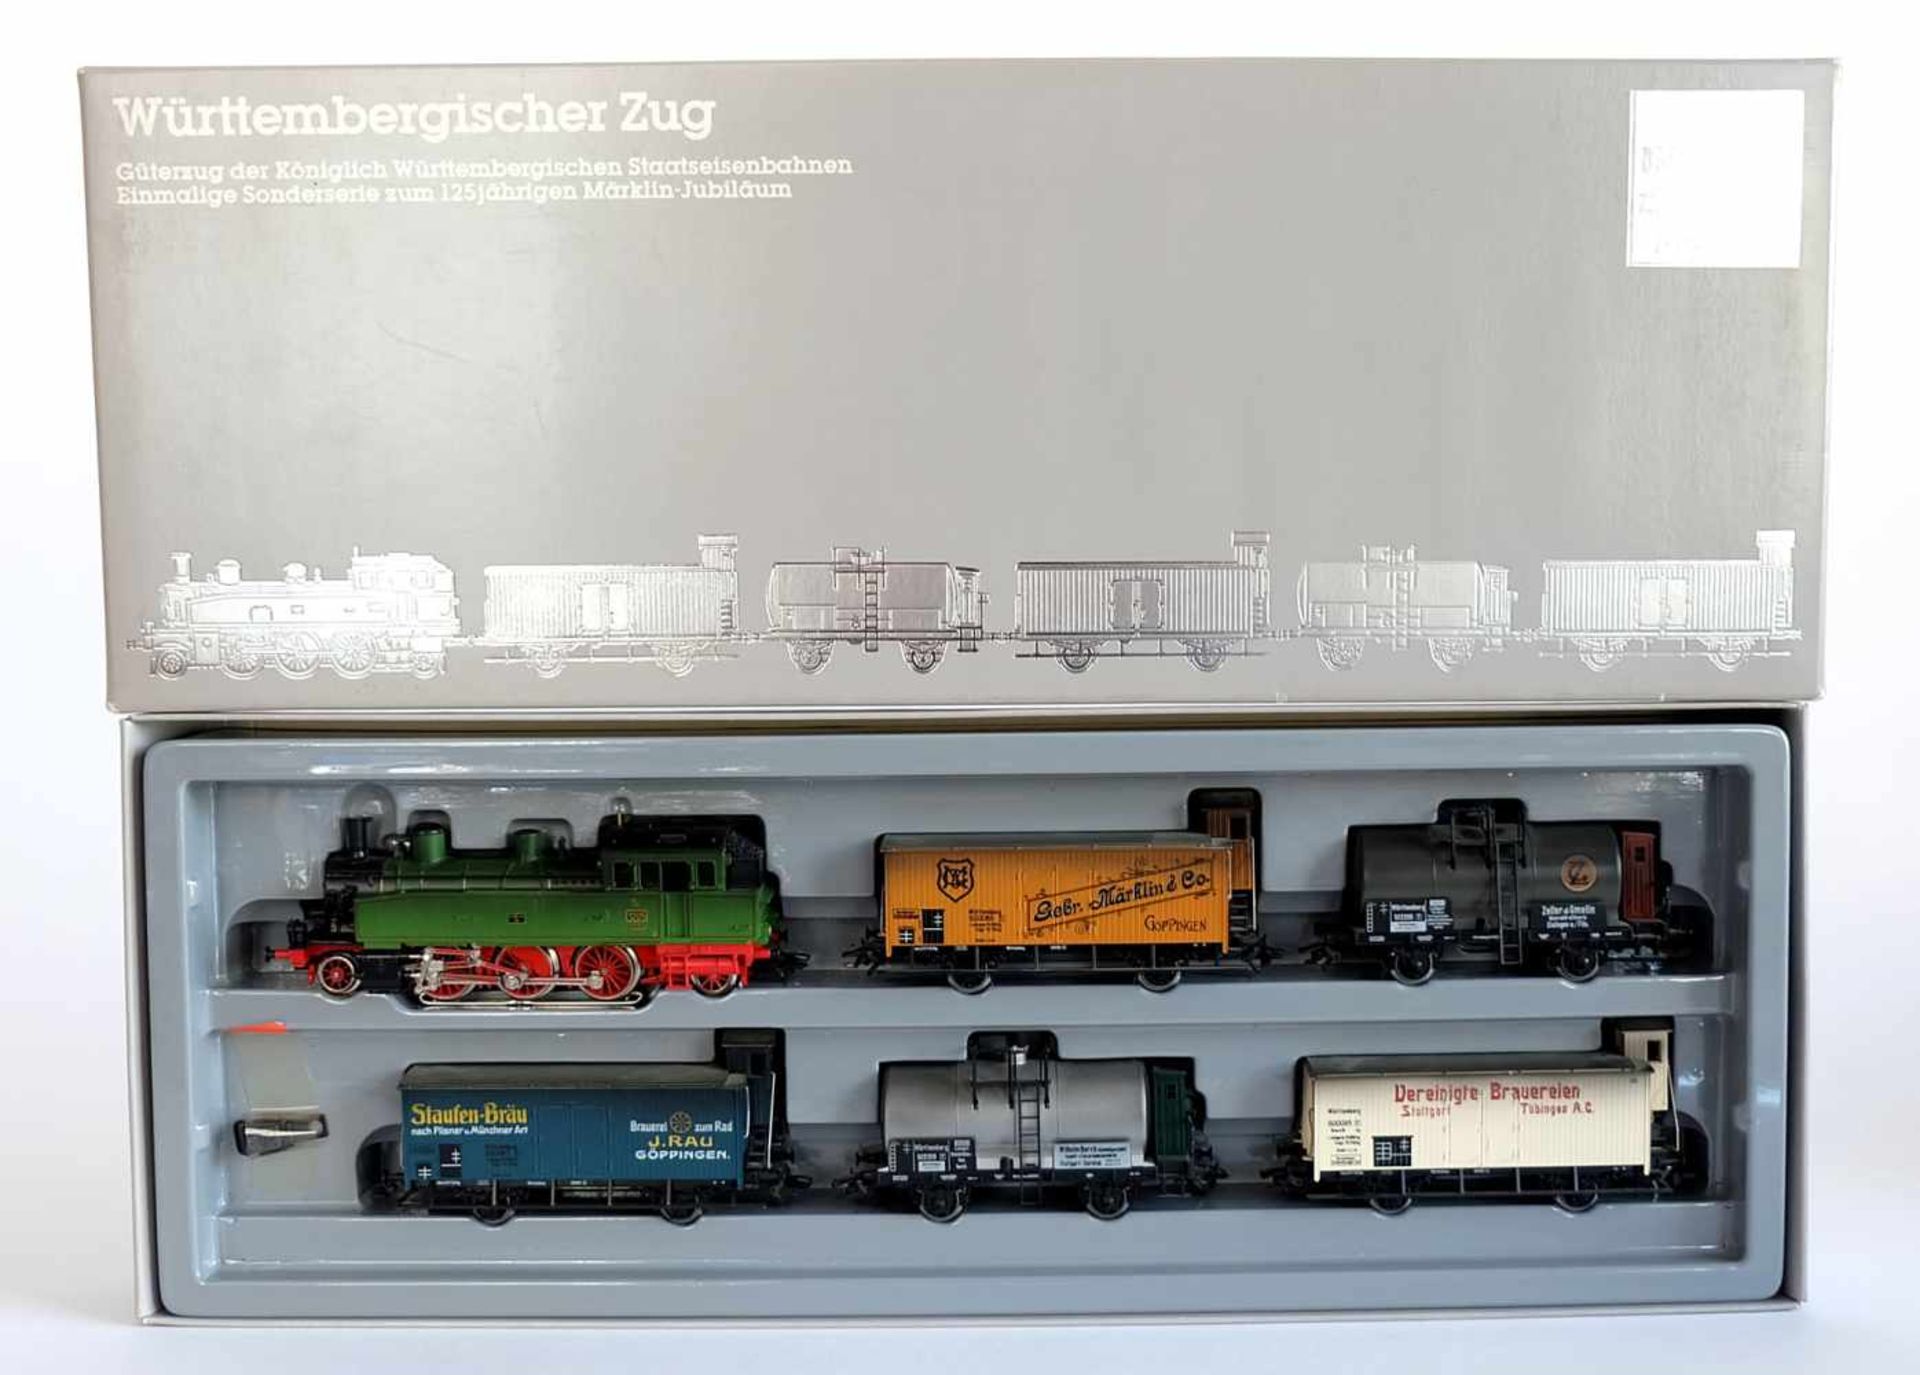 ZUGPACKUNG, KWStE Württembergischer Zug, Sonderserie zum 125jährigen Märklin-Jubiläum, Hersteller